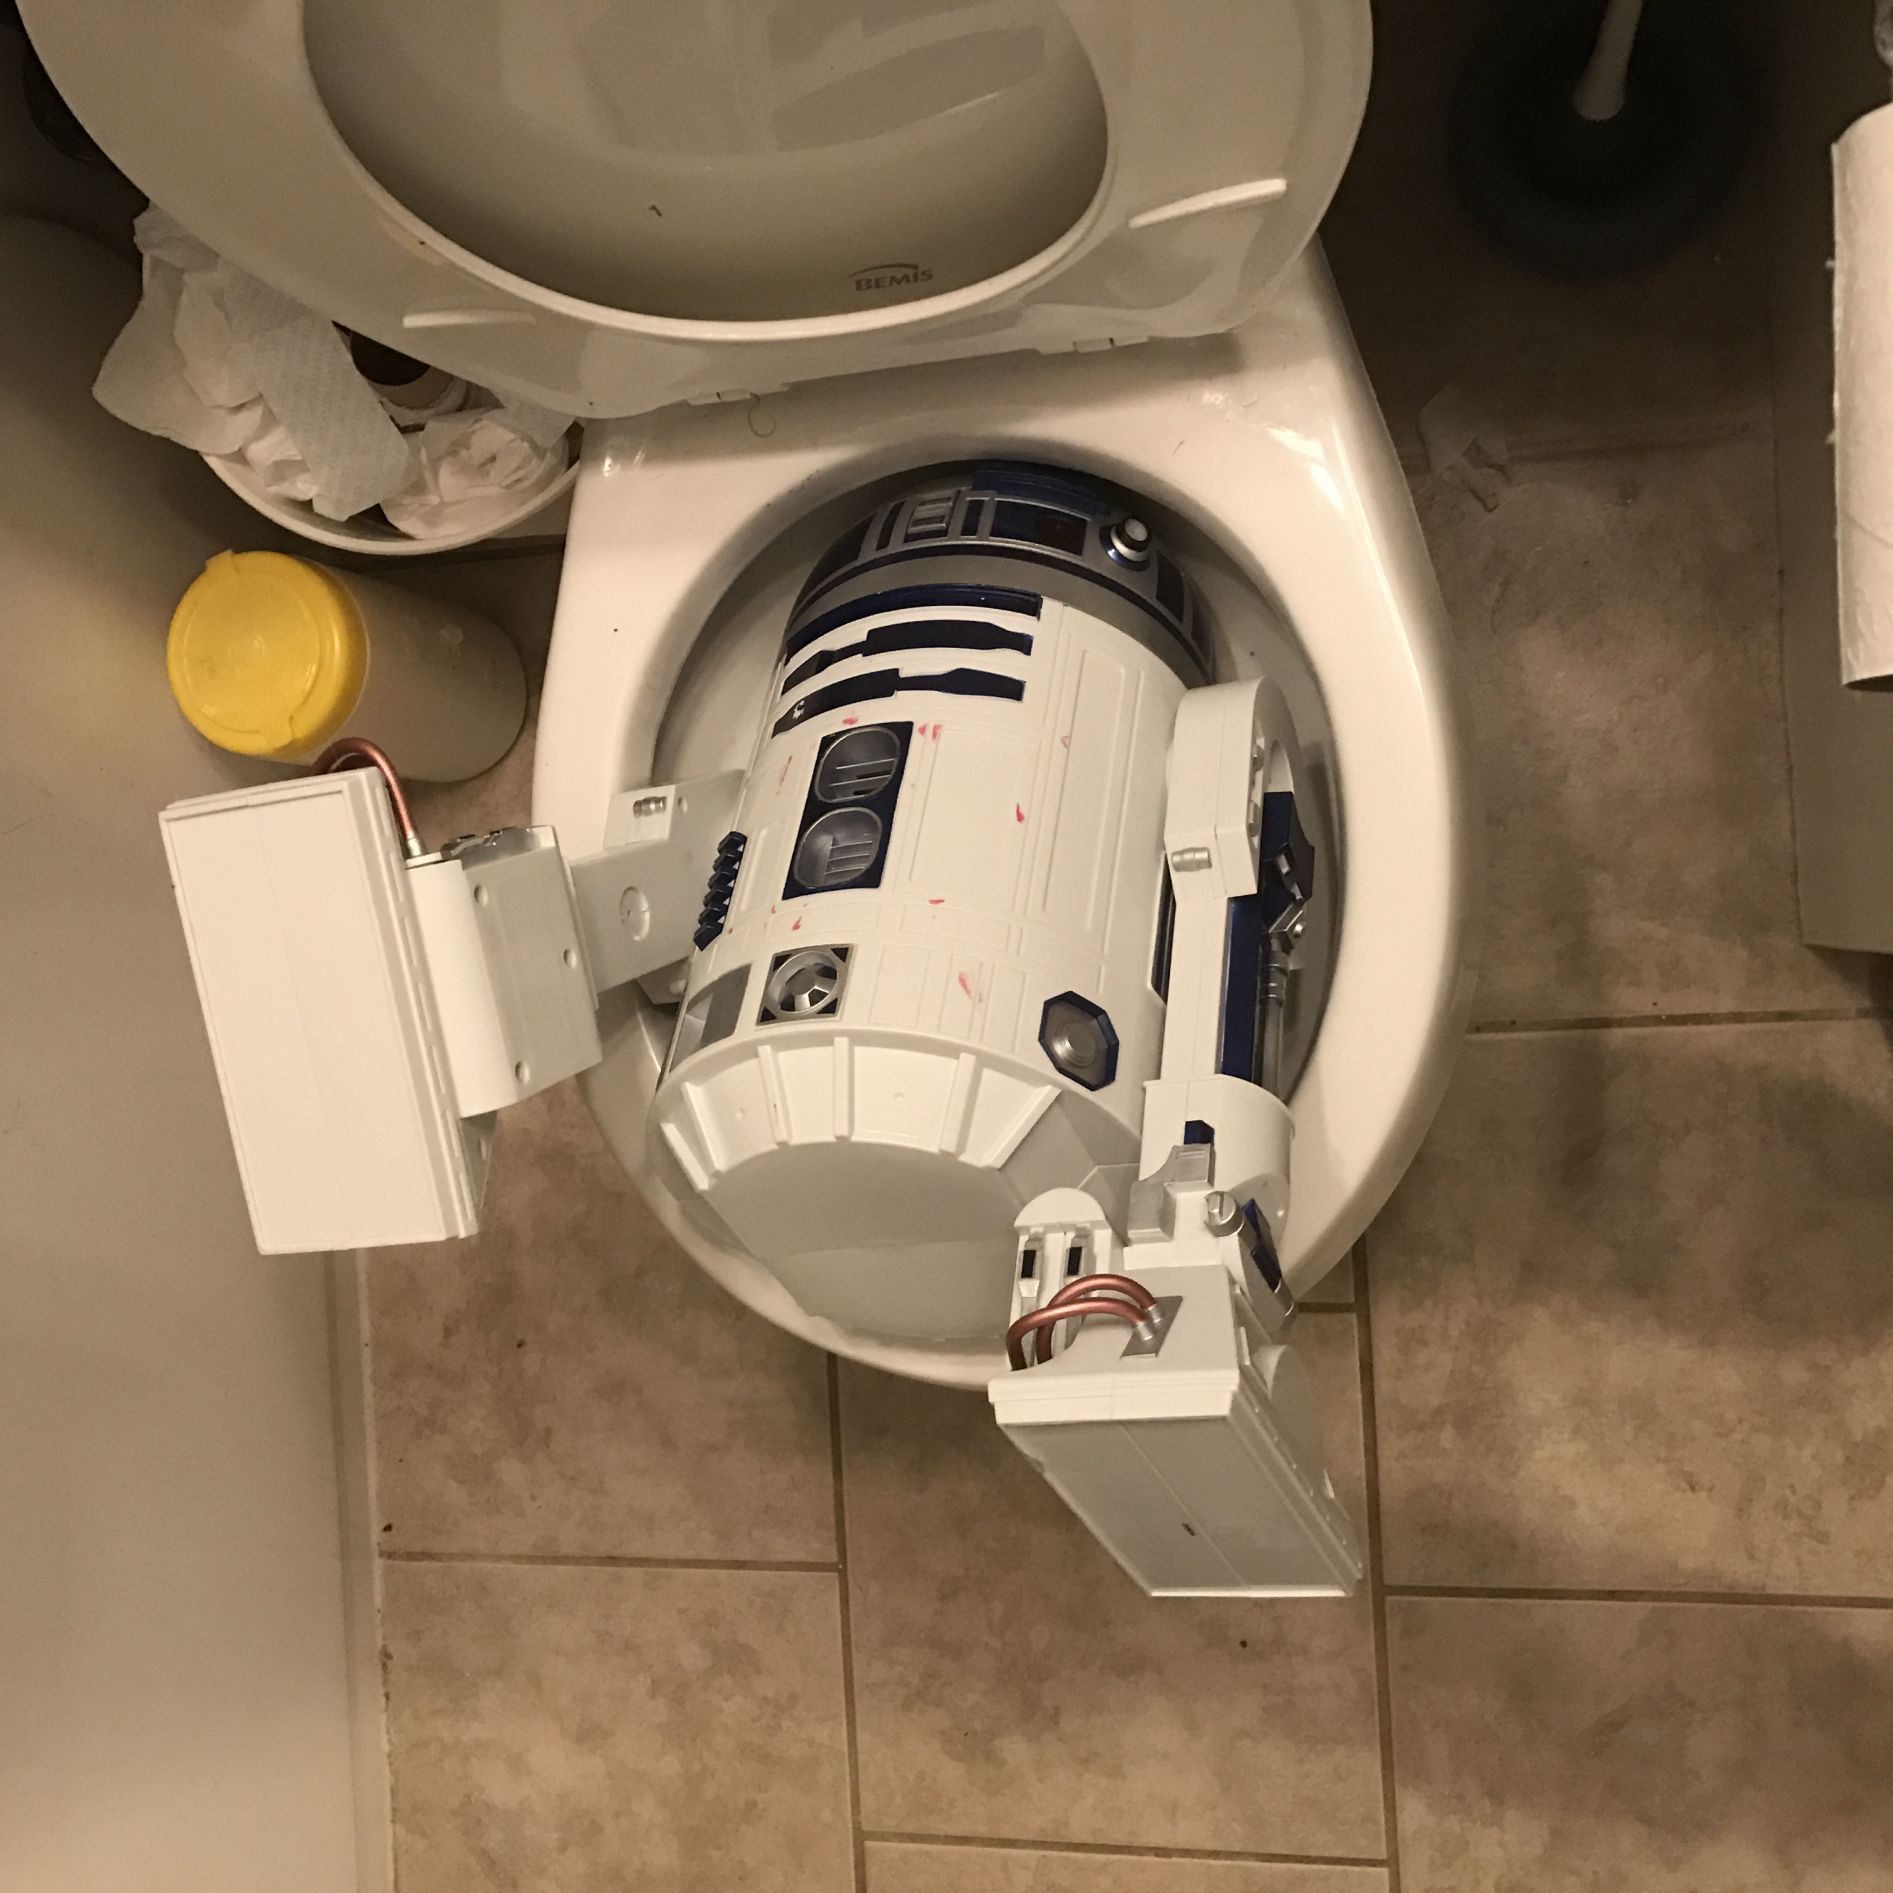 Kid blames R2-D2 Blank Meme Template